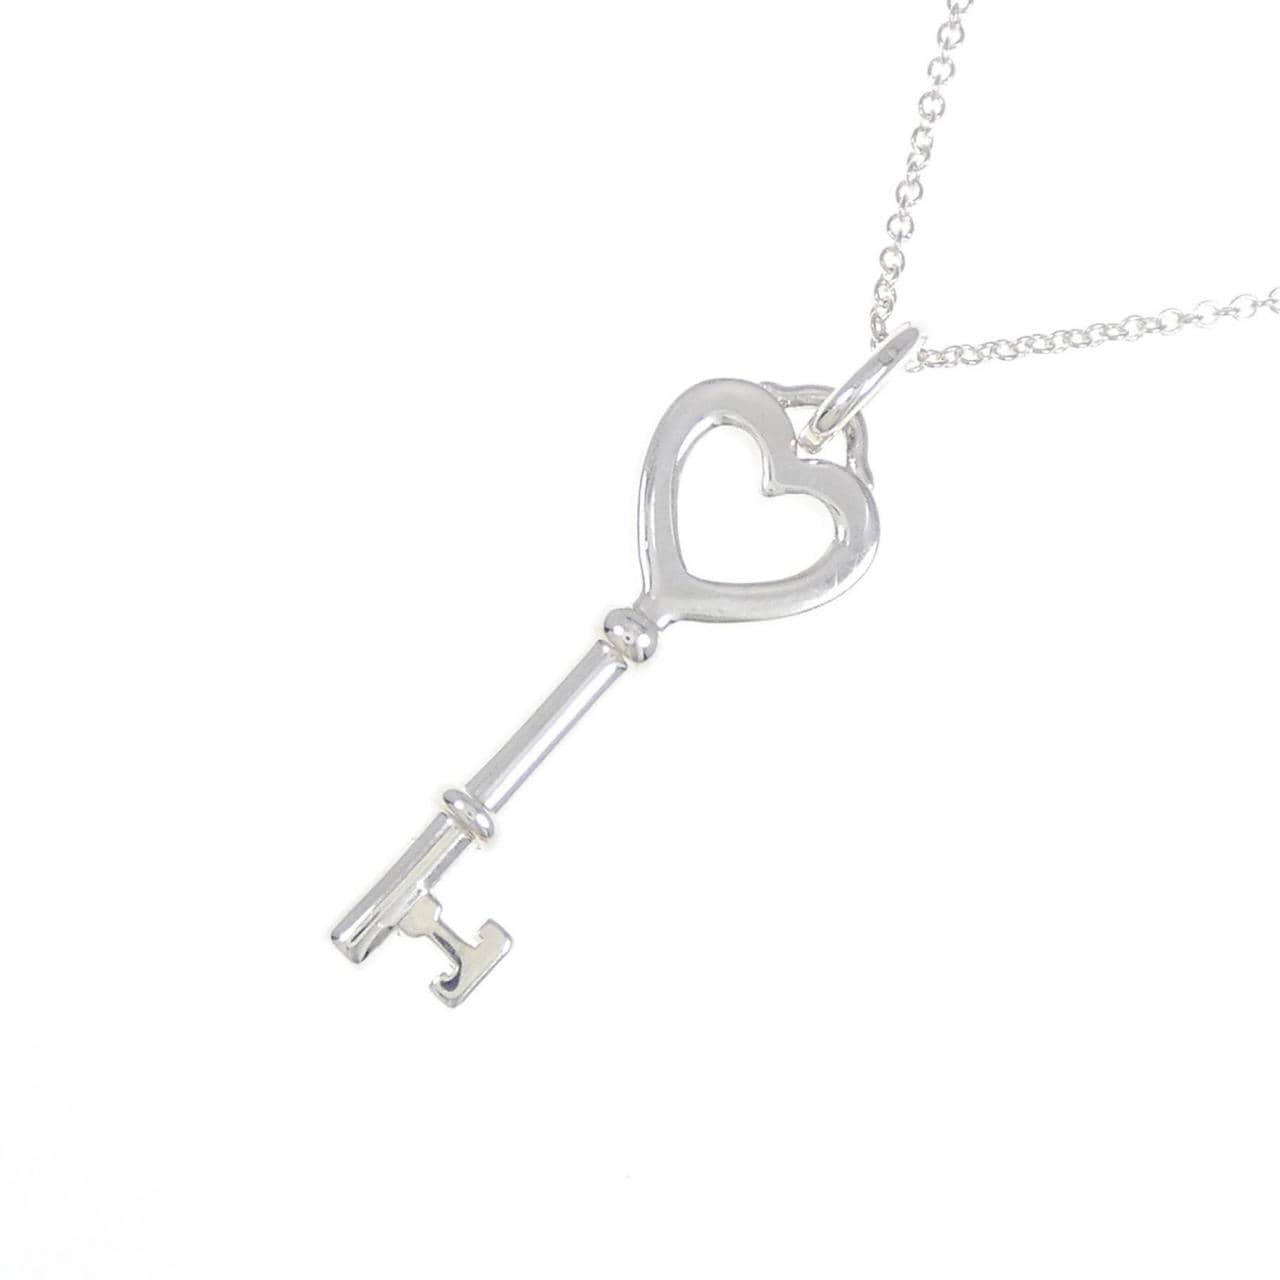 TIFFANY heart key necklace